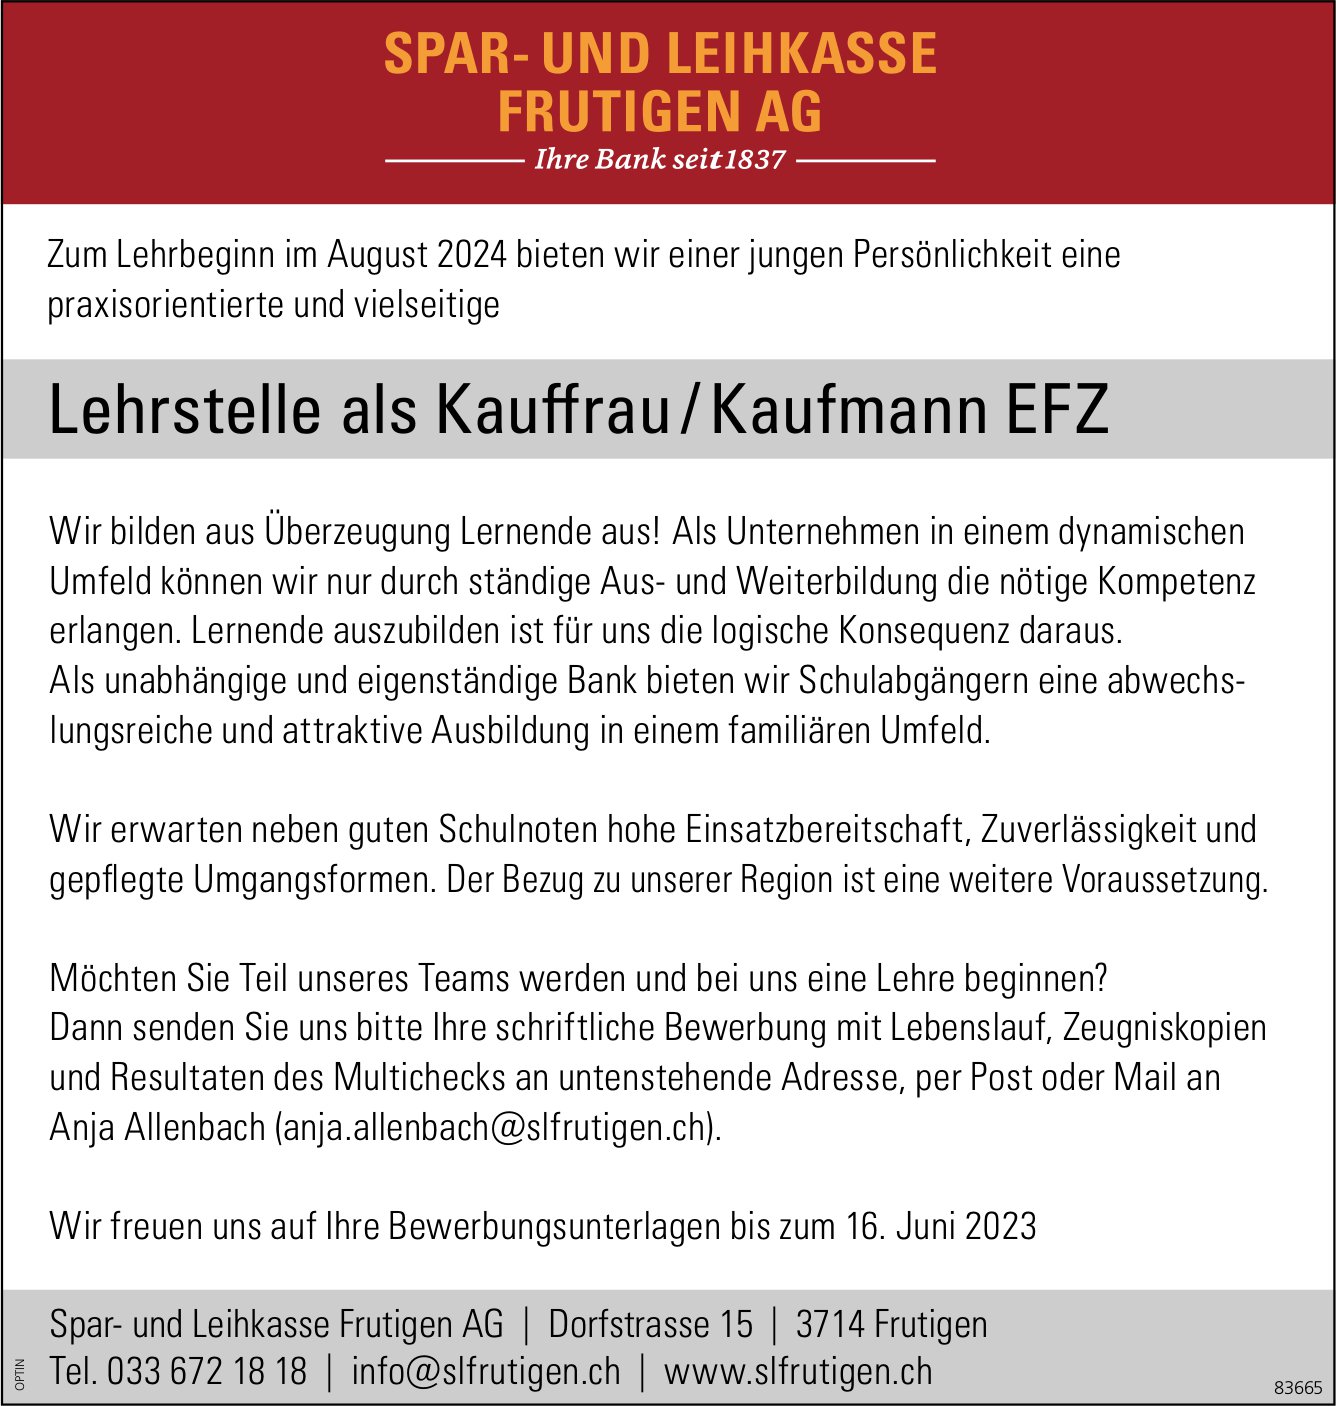 Lehrstelle als Kauffrau / Kaufmann EFZ, Spar- und Leihkasse Frutigen AG, Zu vergeben